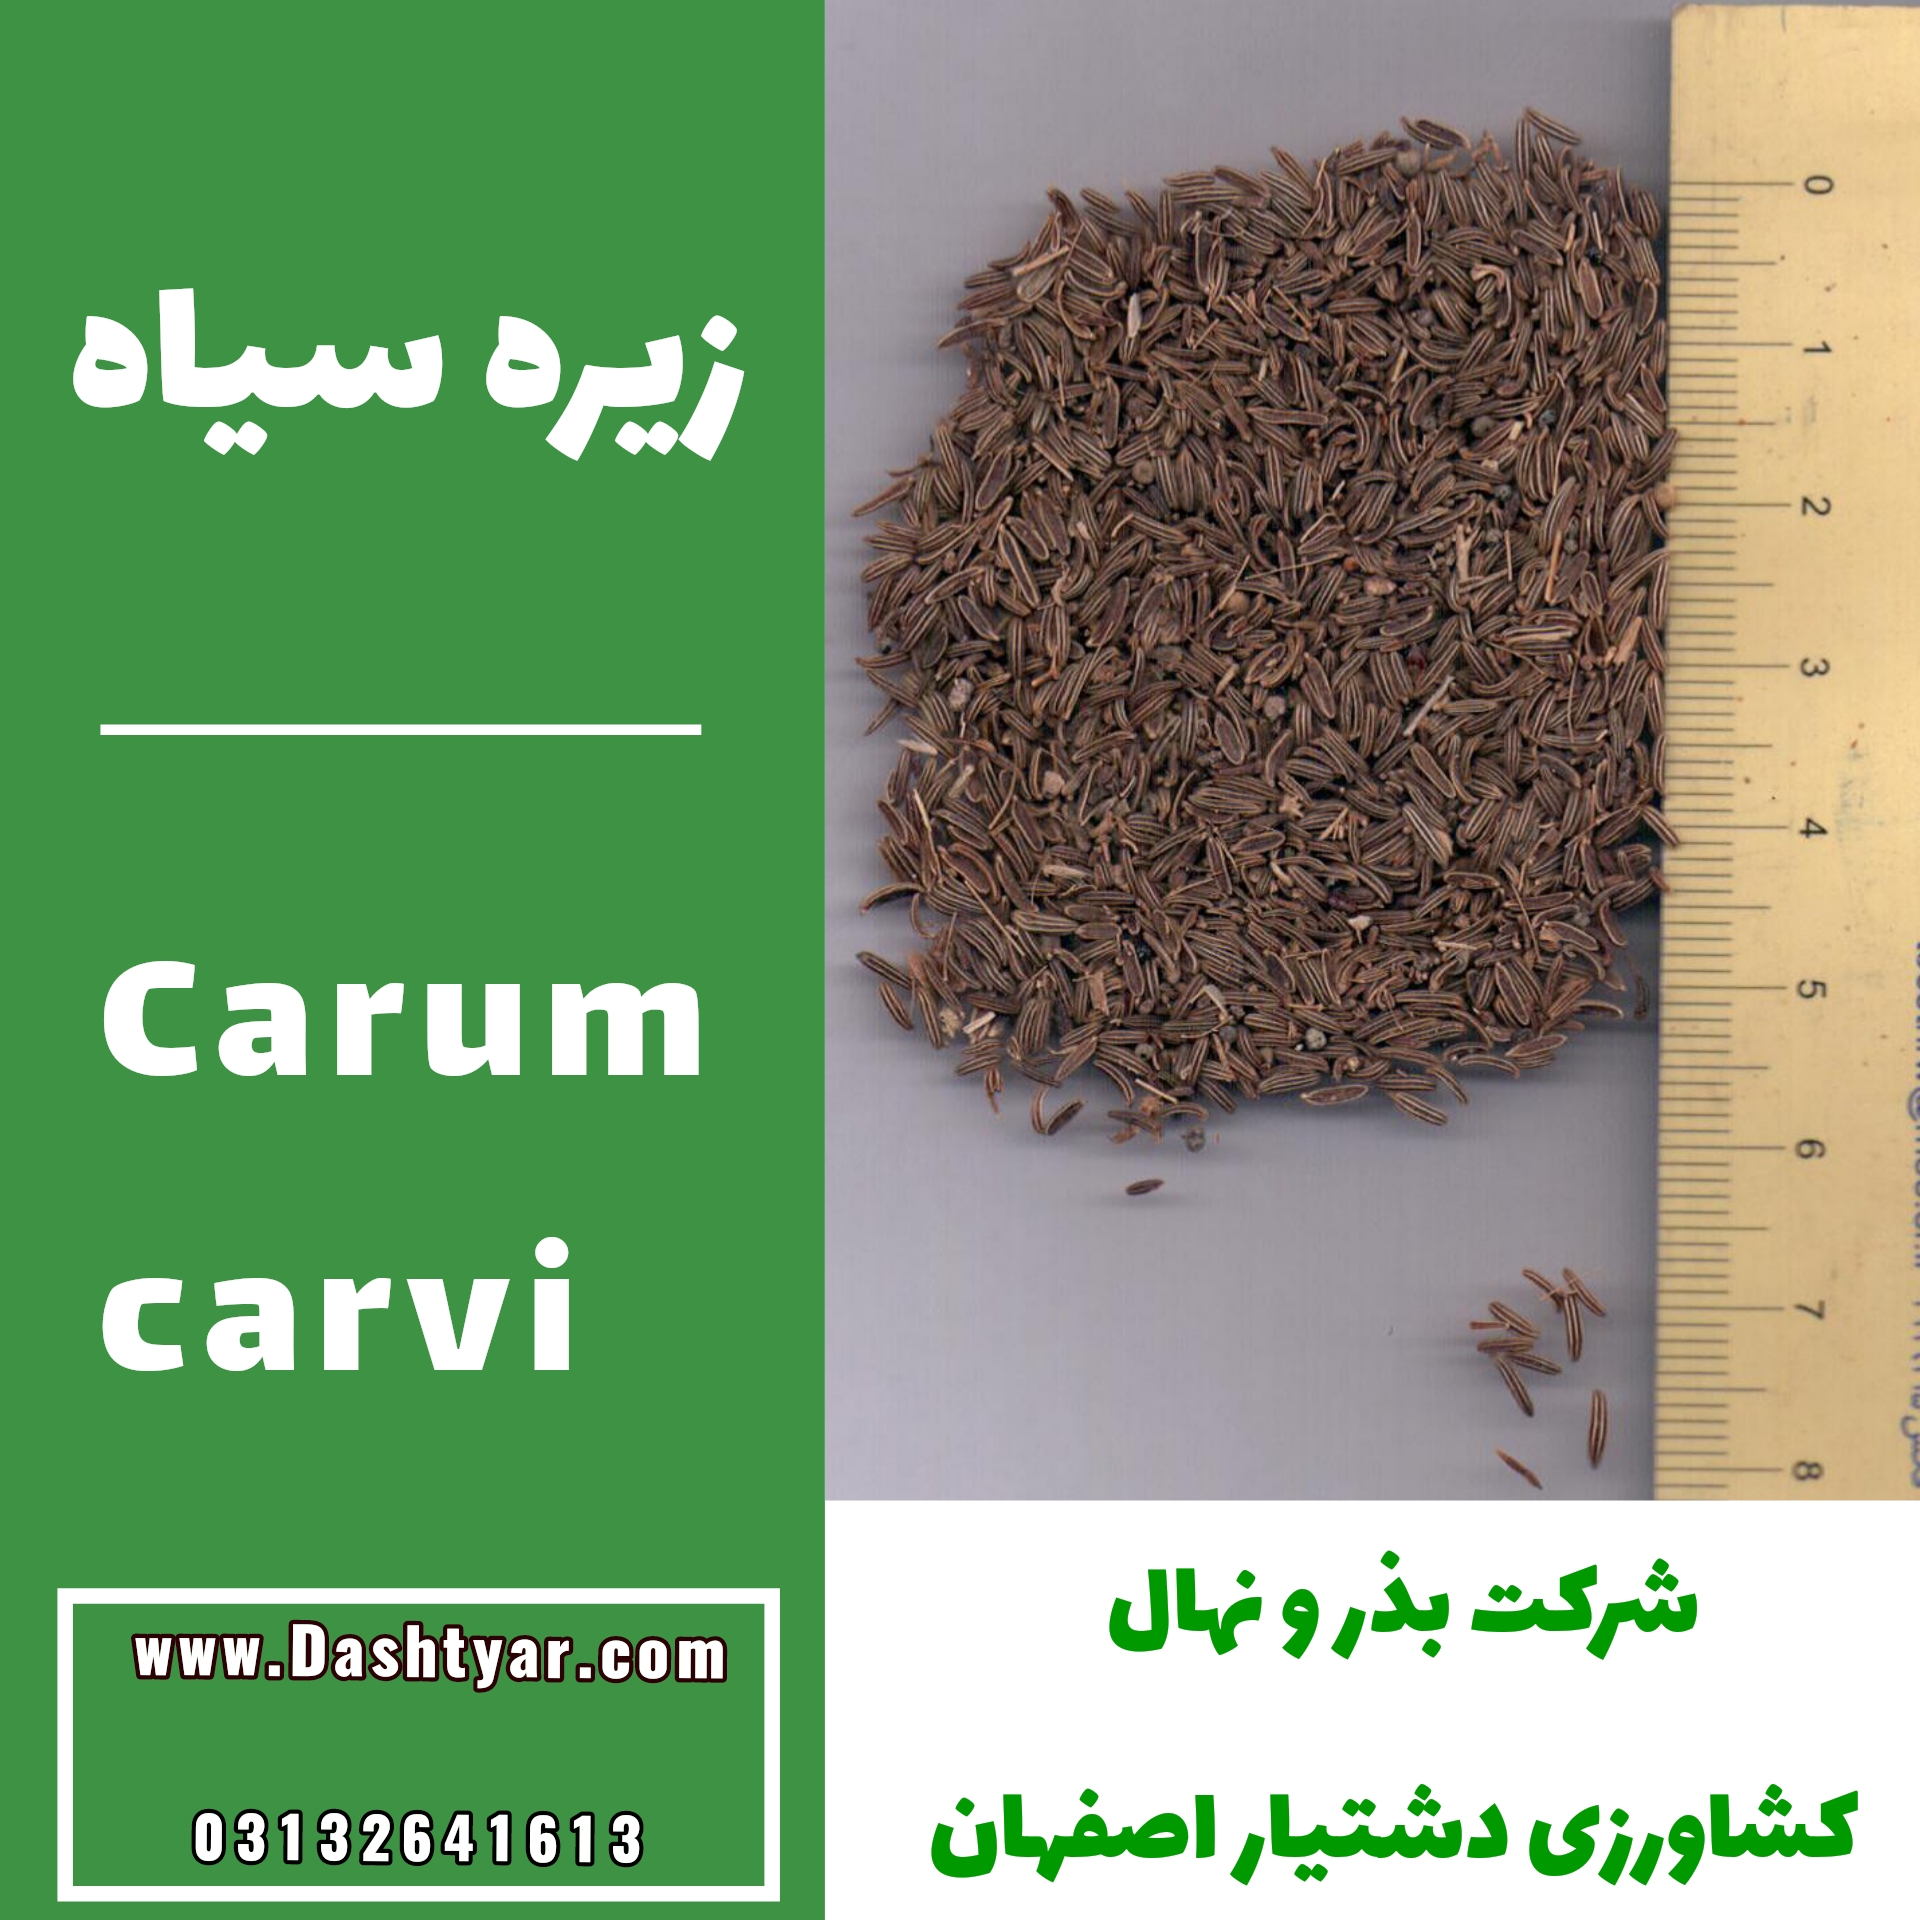 بذر زیره سیاه (Carum carvi )